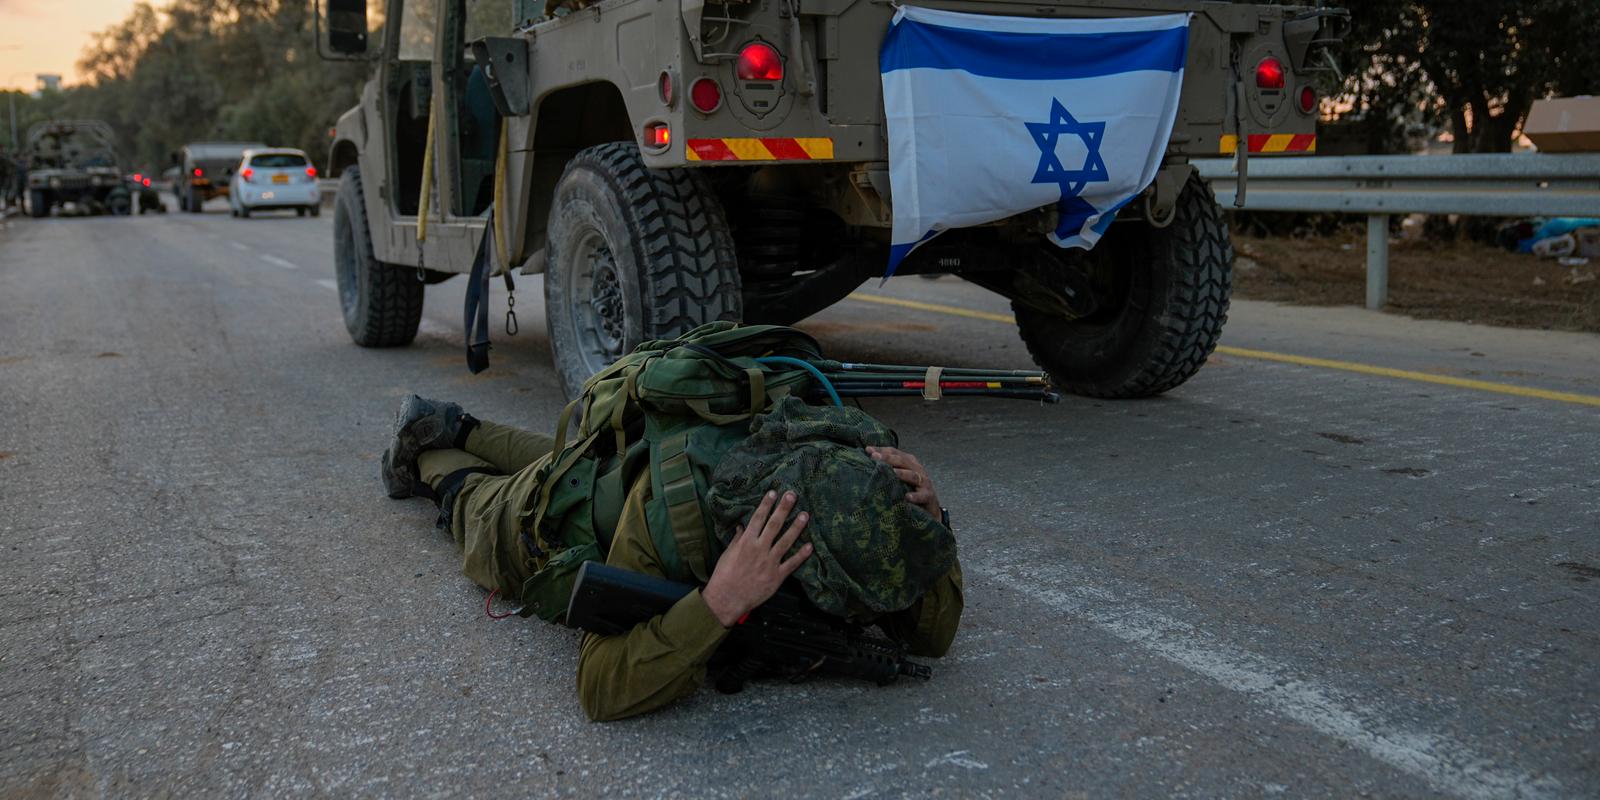 granskning av israels beredskap inför attacken: ”befäst mur av förnekelse”